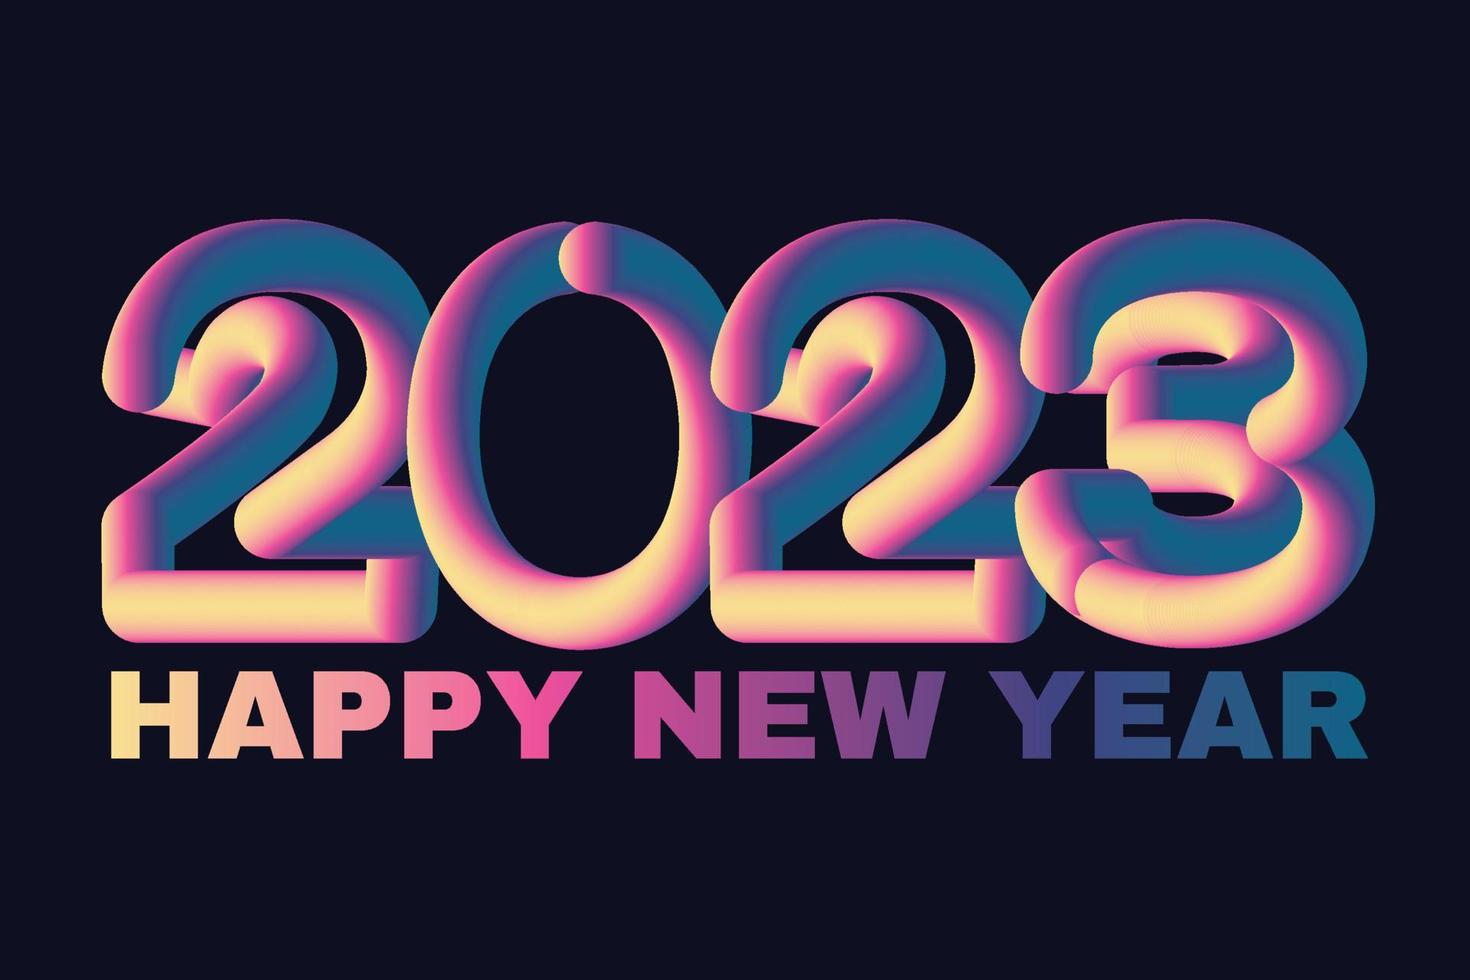 frohes neues jahr 2023 winterurlaub grußkarte entwurfsvorlage. ende 2022 und anfang 2023. das konzept für den beginn des neuen jahres. das Kalenderblatt dreht sich um und das neue Jahr beginnt vektor